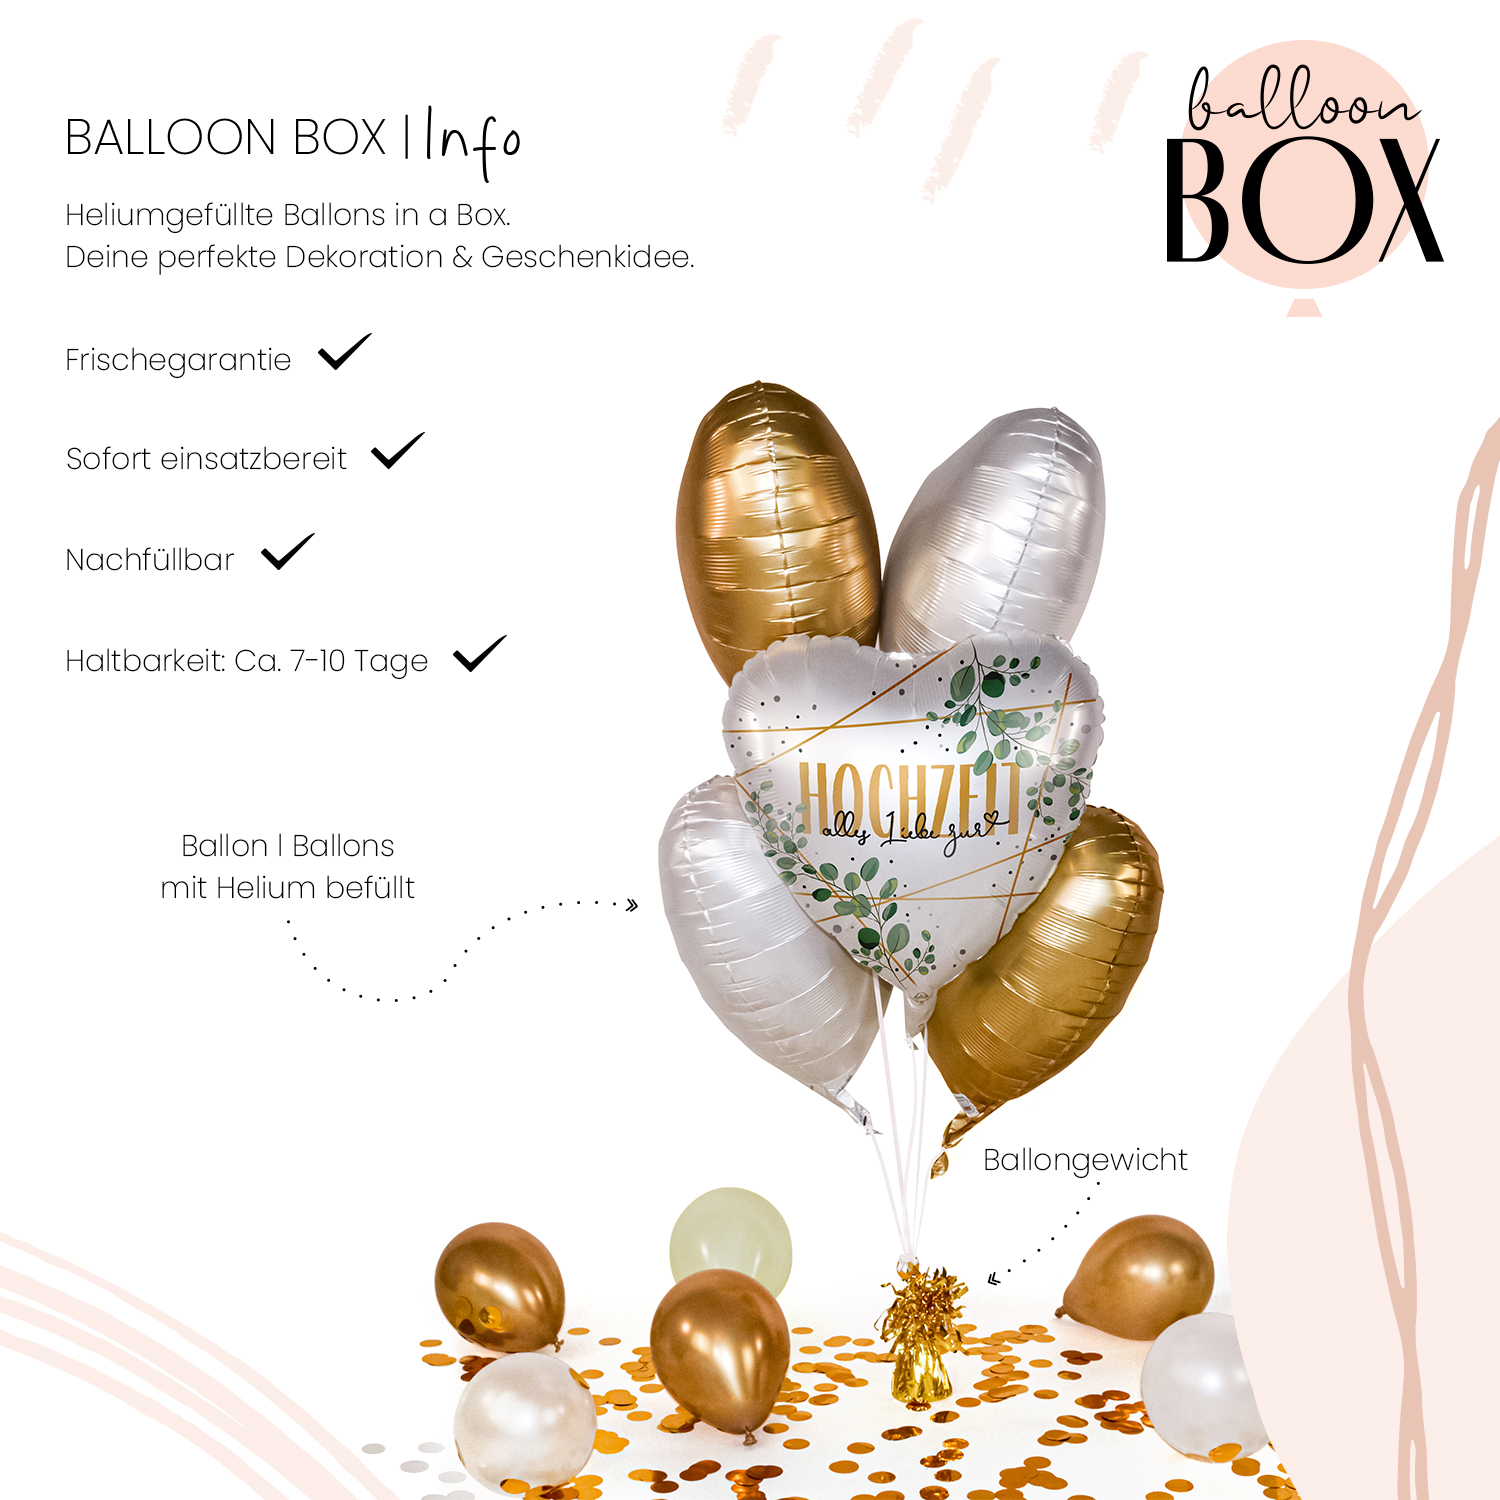 Heliumballon in a Box - Hochzeit Eukalyptus